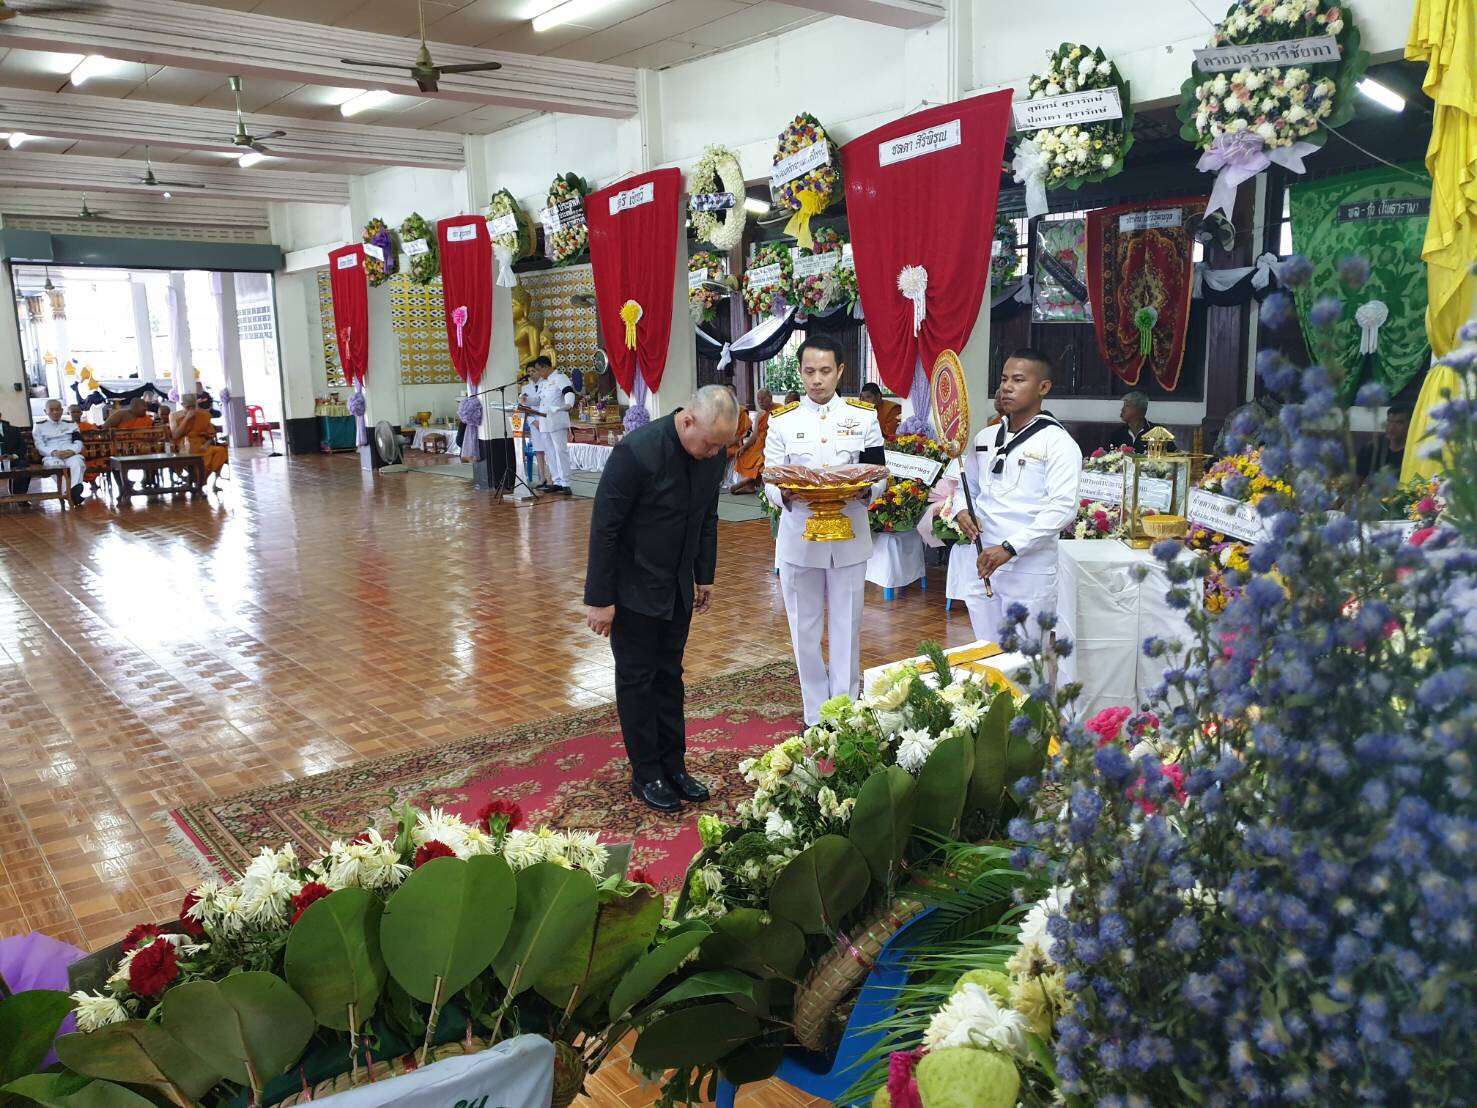 เลขาธิการวุฒิสภา ร่วมงานพระราชทานเพลิงศพ บิดาข้าราชการ สำนักกรรมาธิการ 3 ณ วัดครุใน กรุงเทพมหานคร